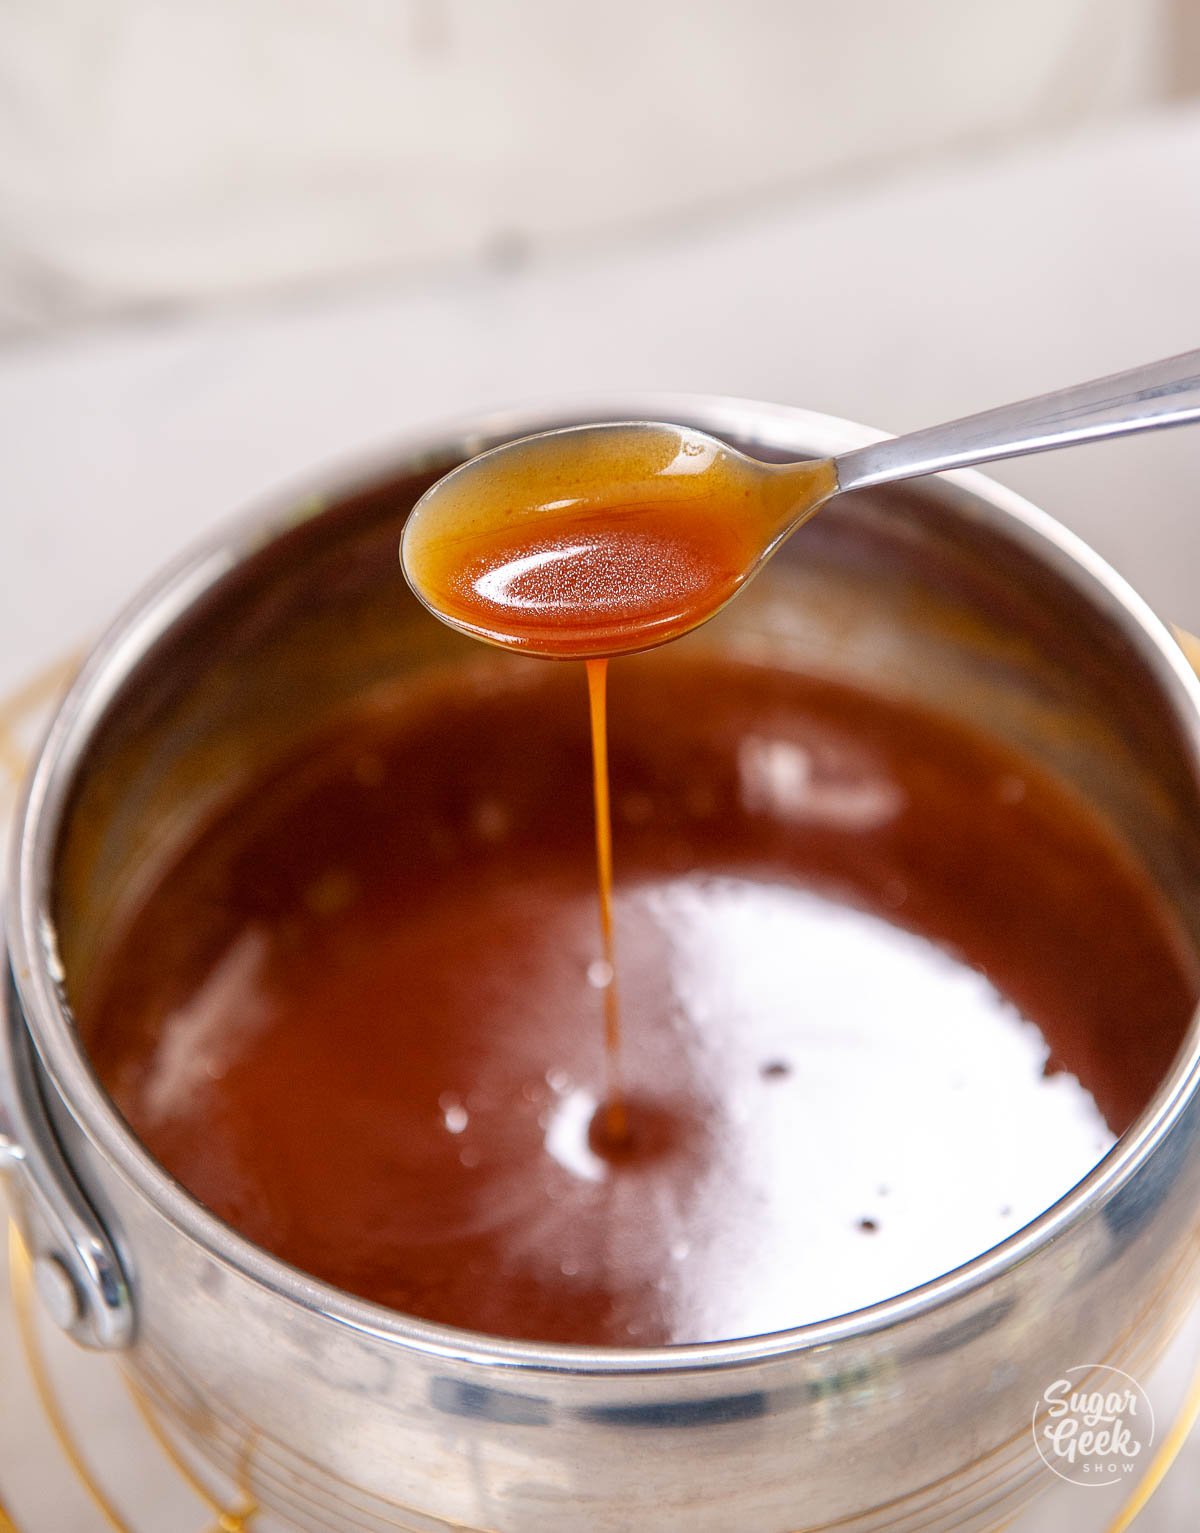 spoon dripping caramel sauce into sauce pan